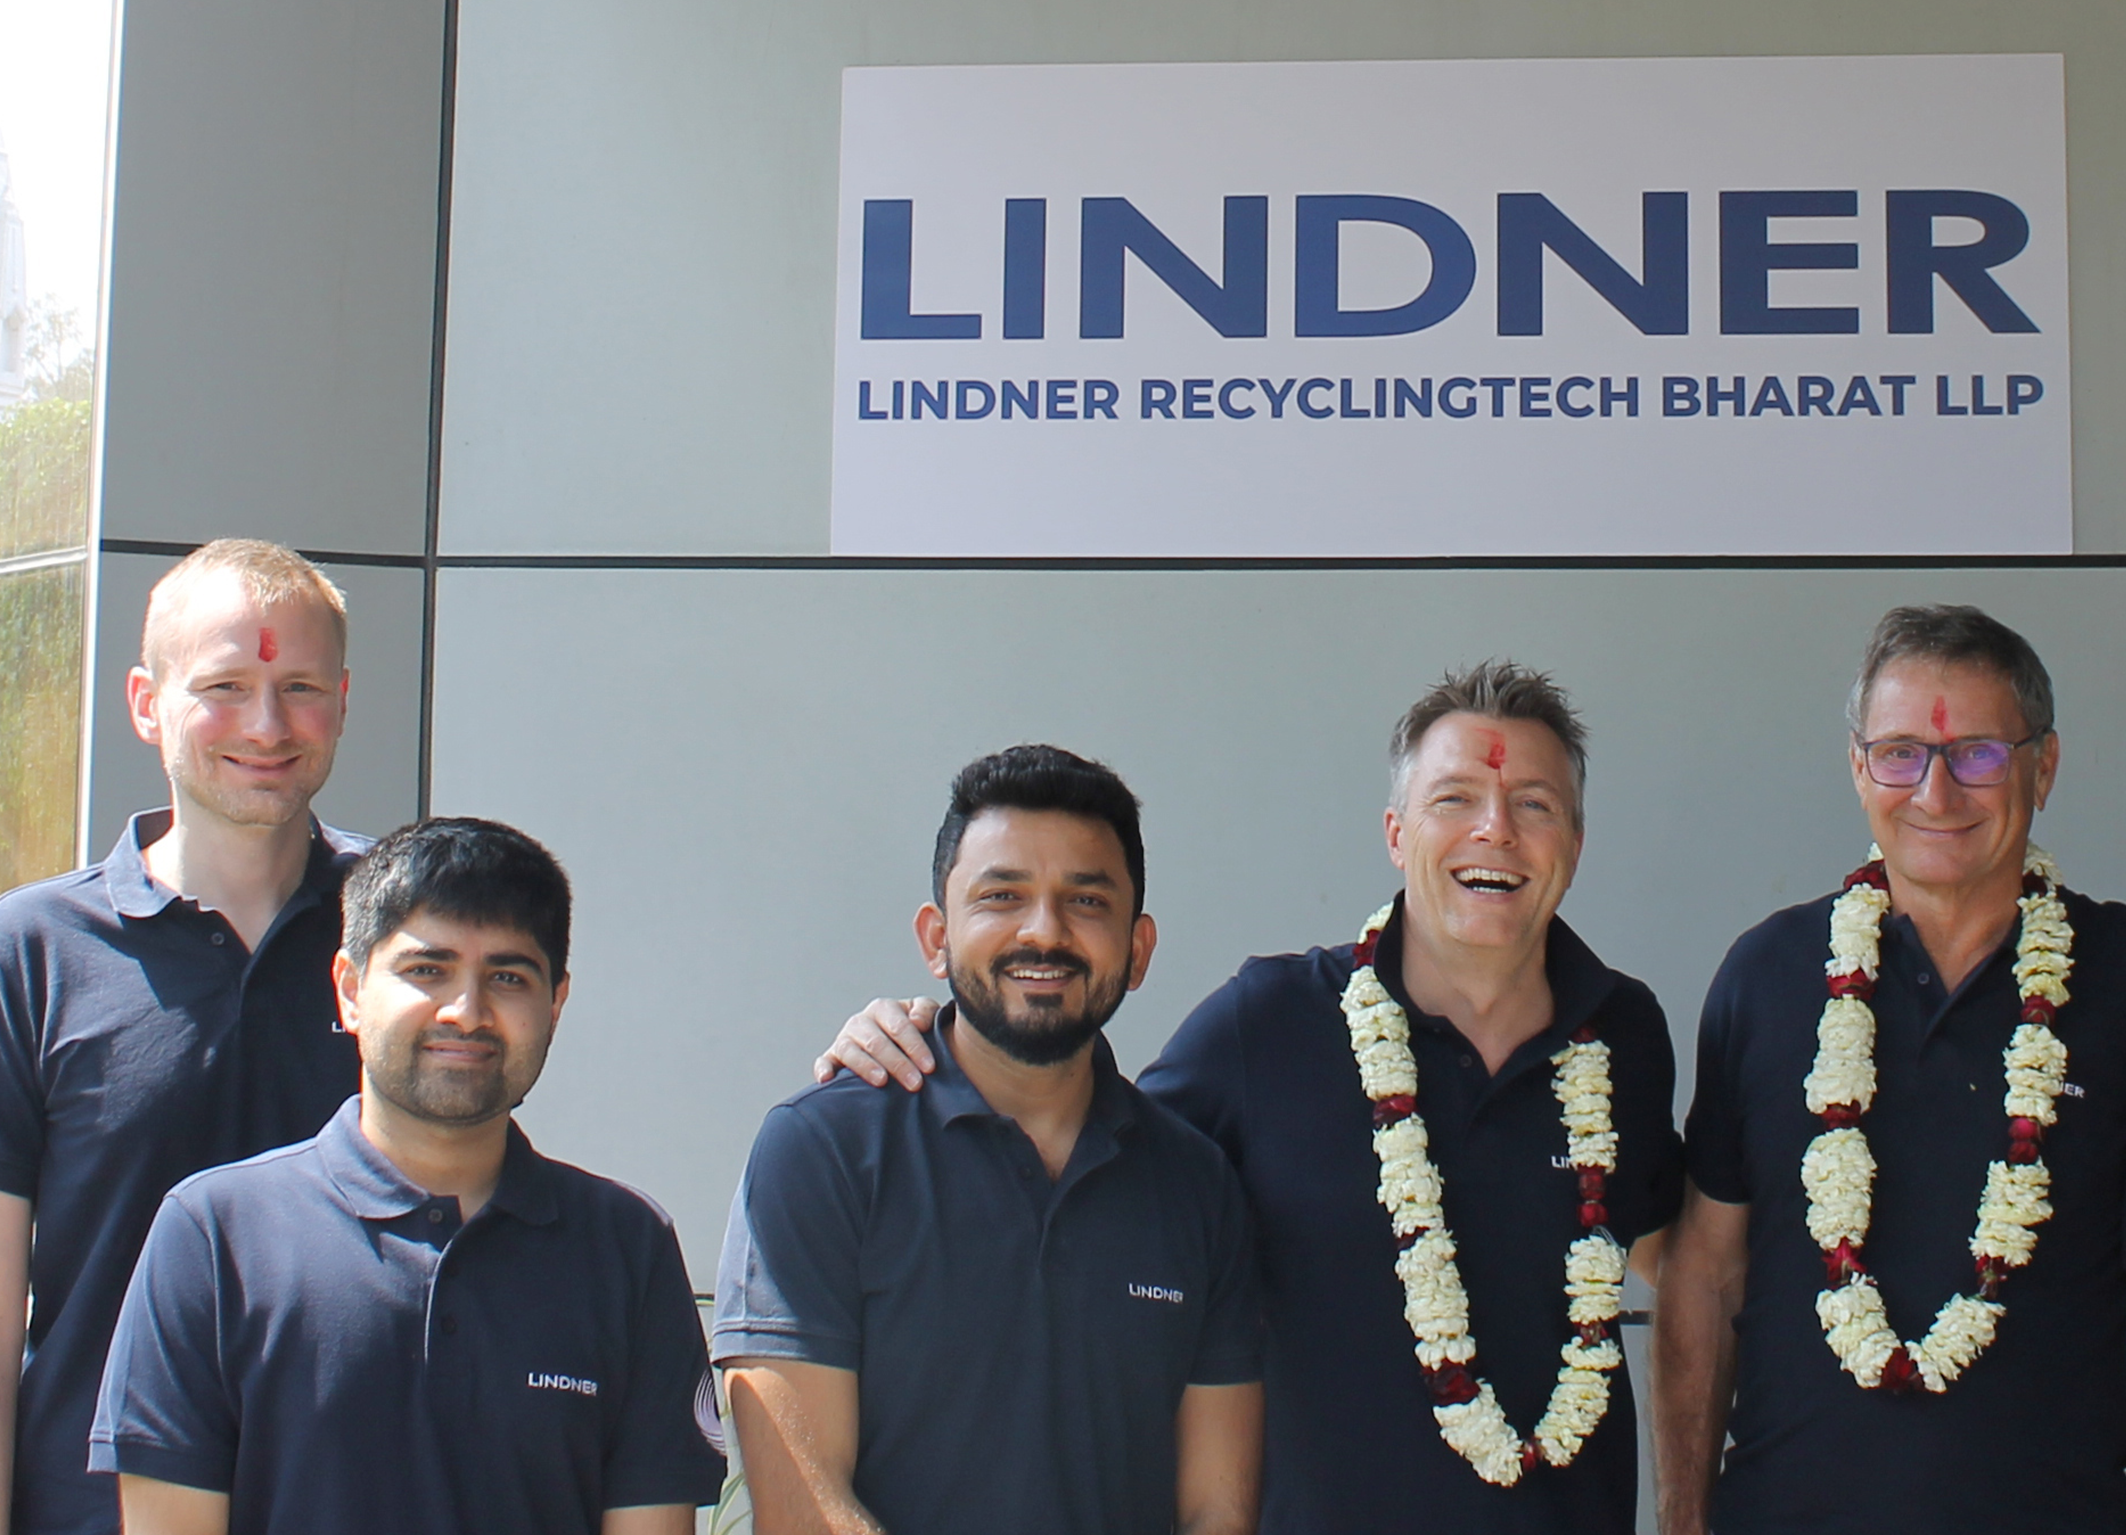 La fundacin de Lindner Recyclingtech Bharat aade otro centro a las filiales de Alemania, Estados Unidos, Singapur y Francia...